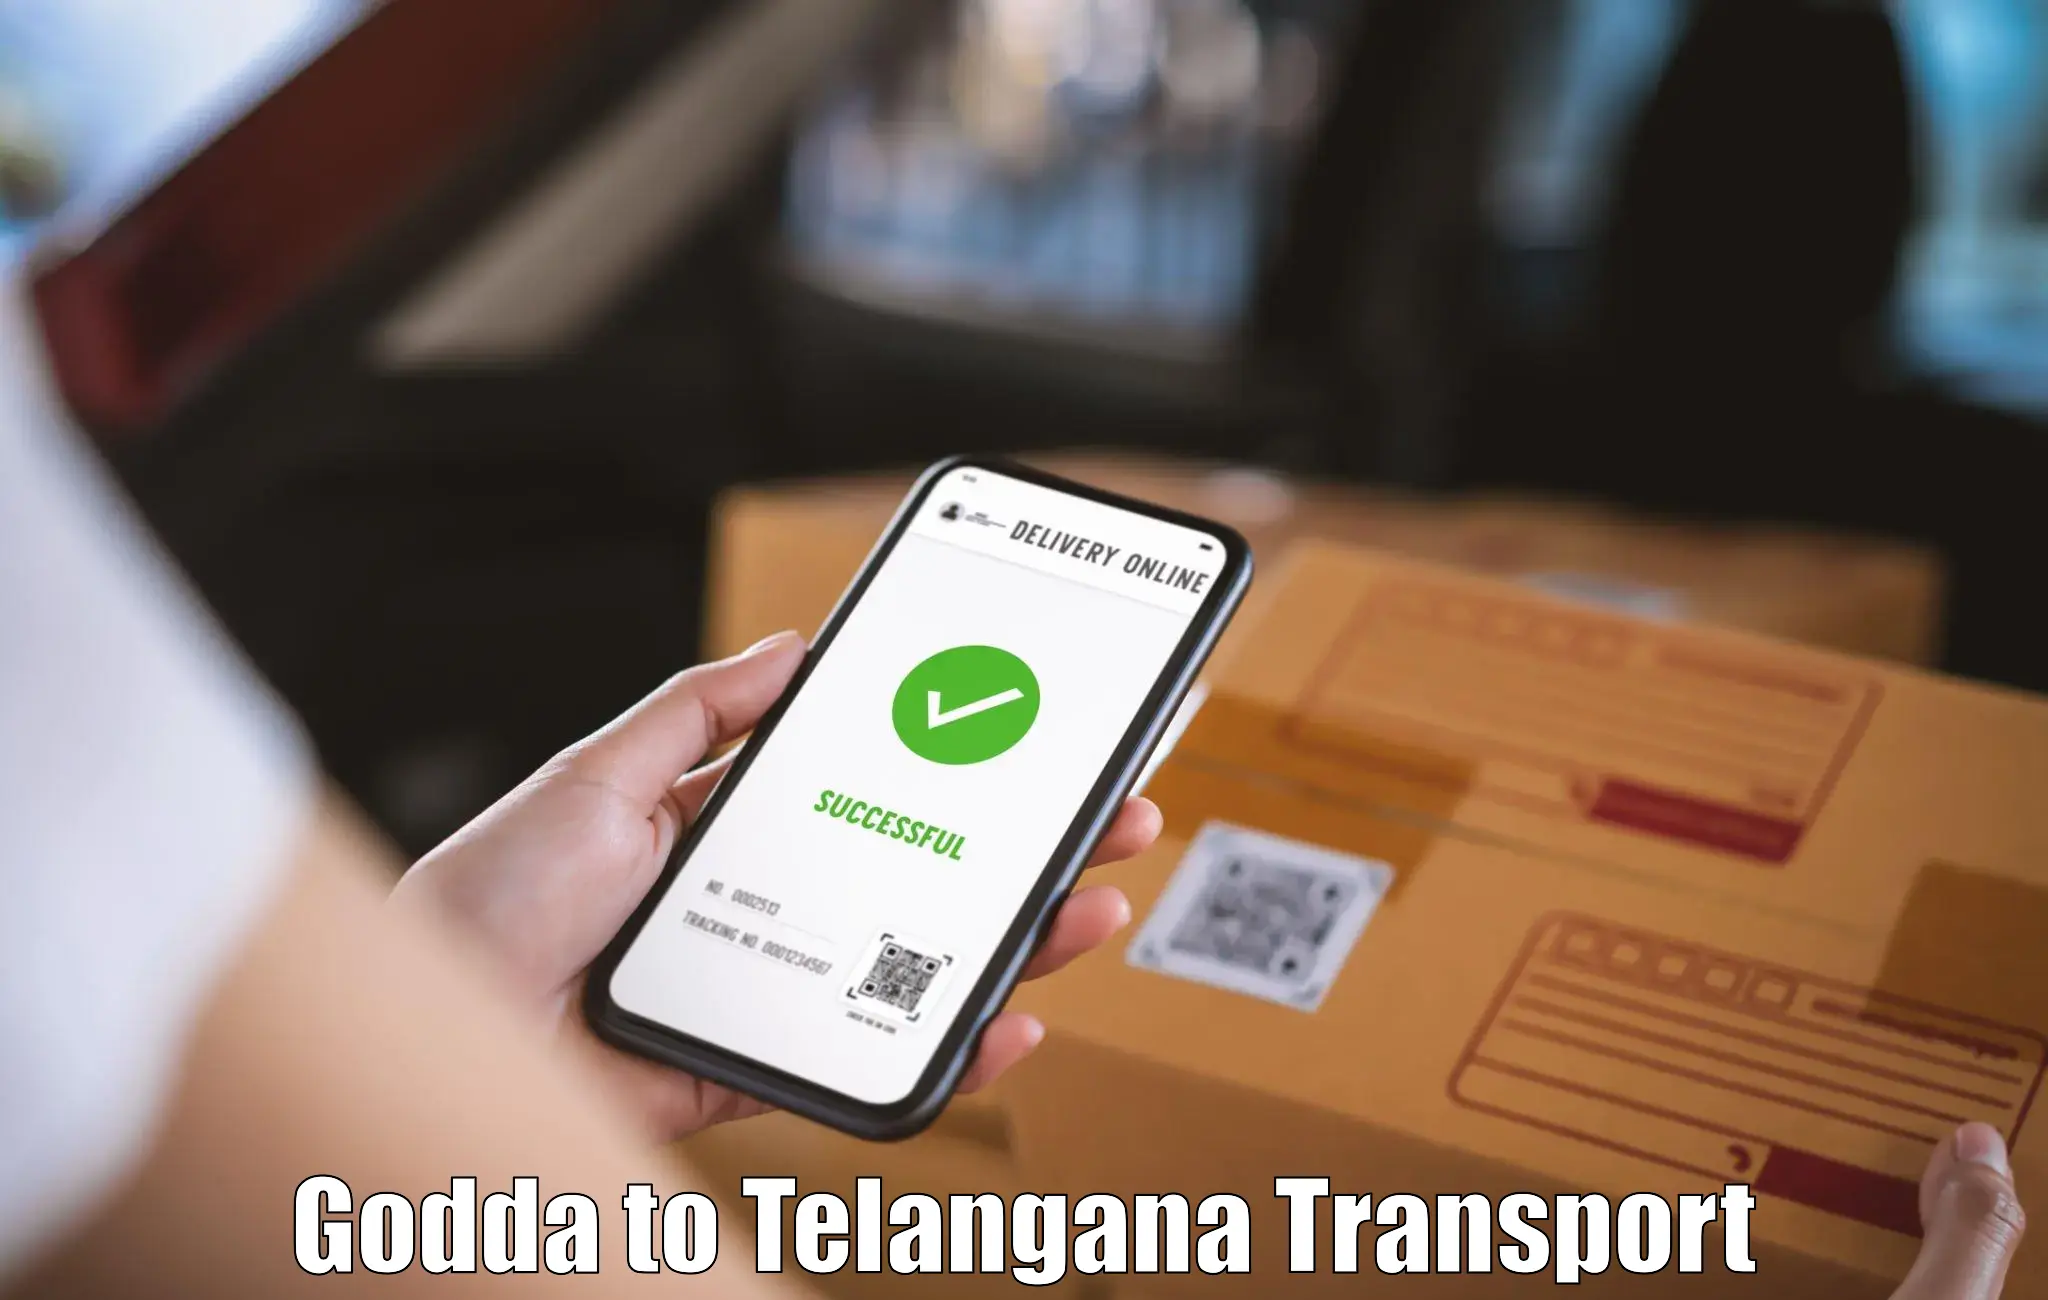 Transport shared services Godda to Kothur